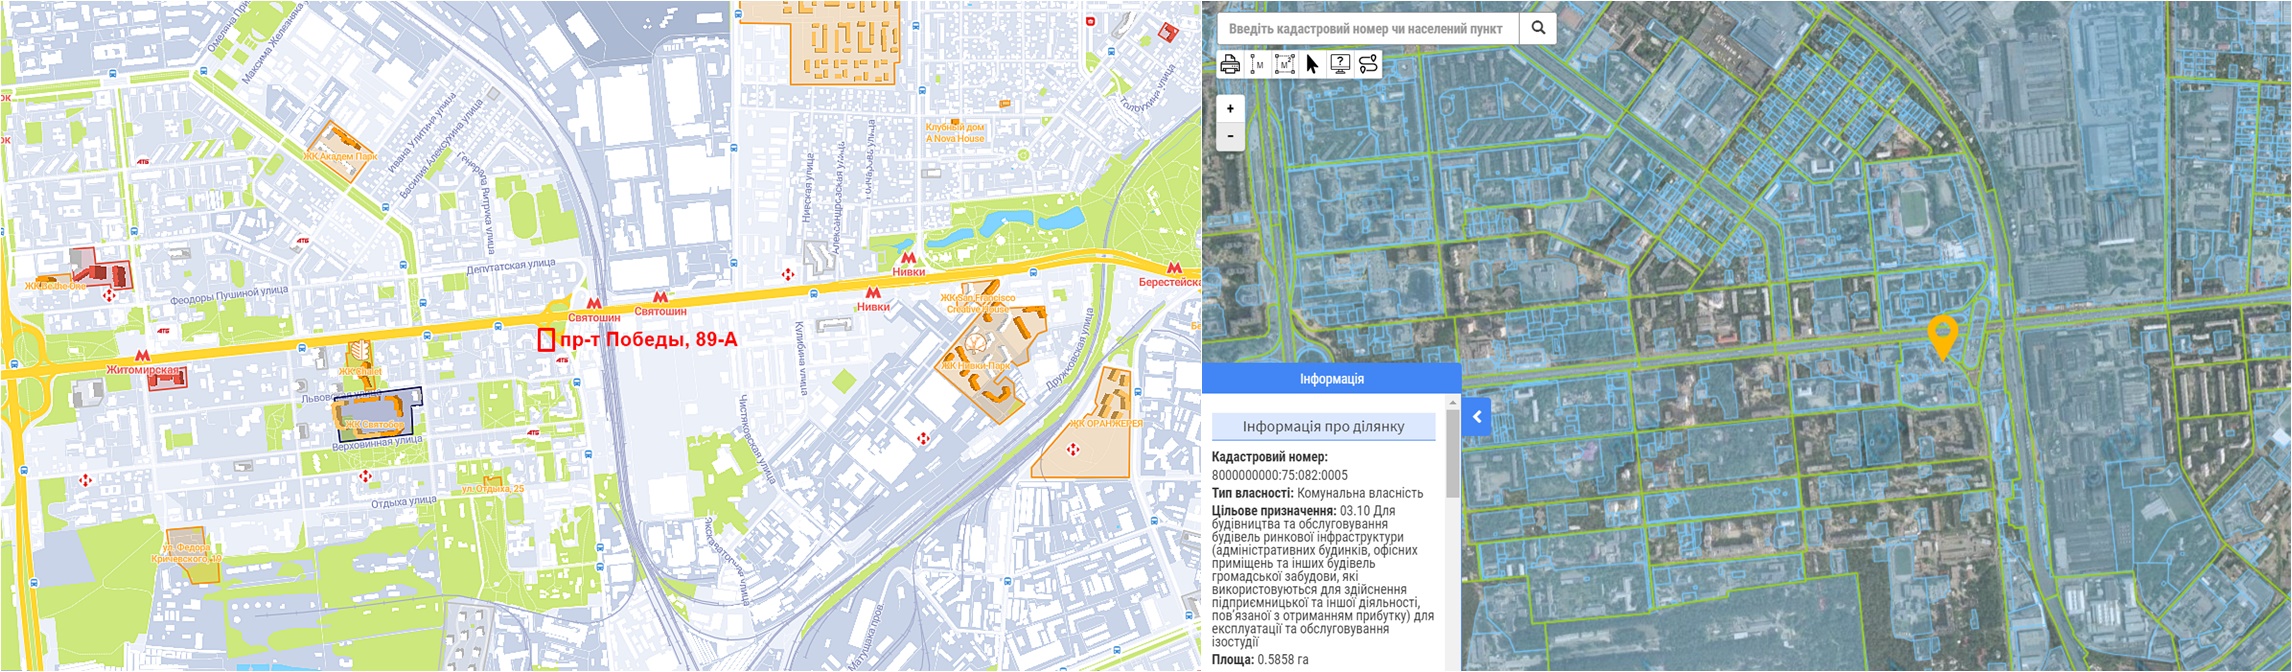 Проект реконструкции на проспекте Победы, 89-А данные кадастра и на карте